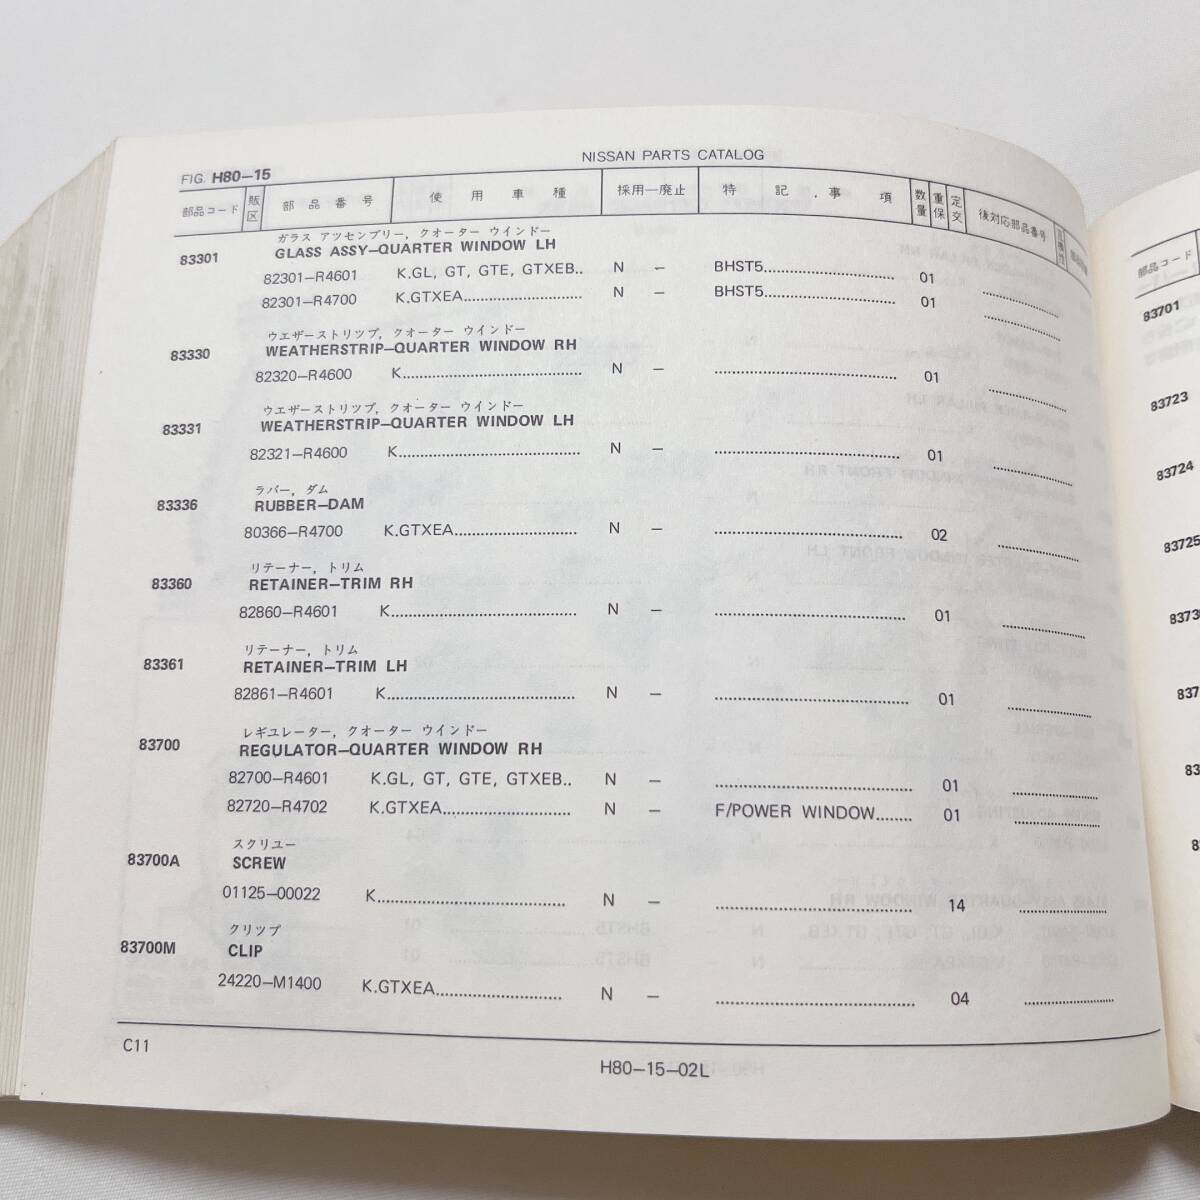  Ken&Mary каталог запчастей 76 год 7 месяц C110 type Ken&Mary Prince список запасных частей 